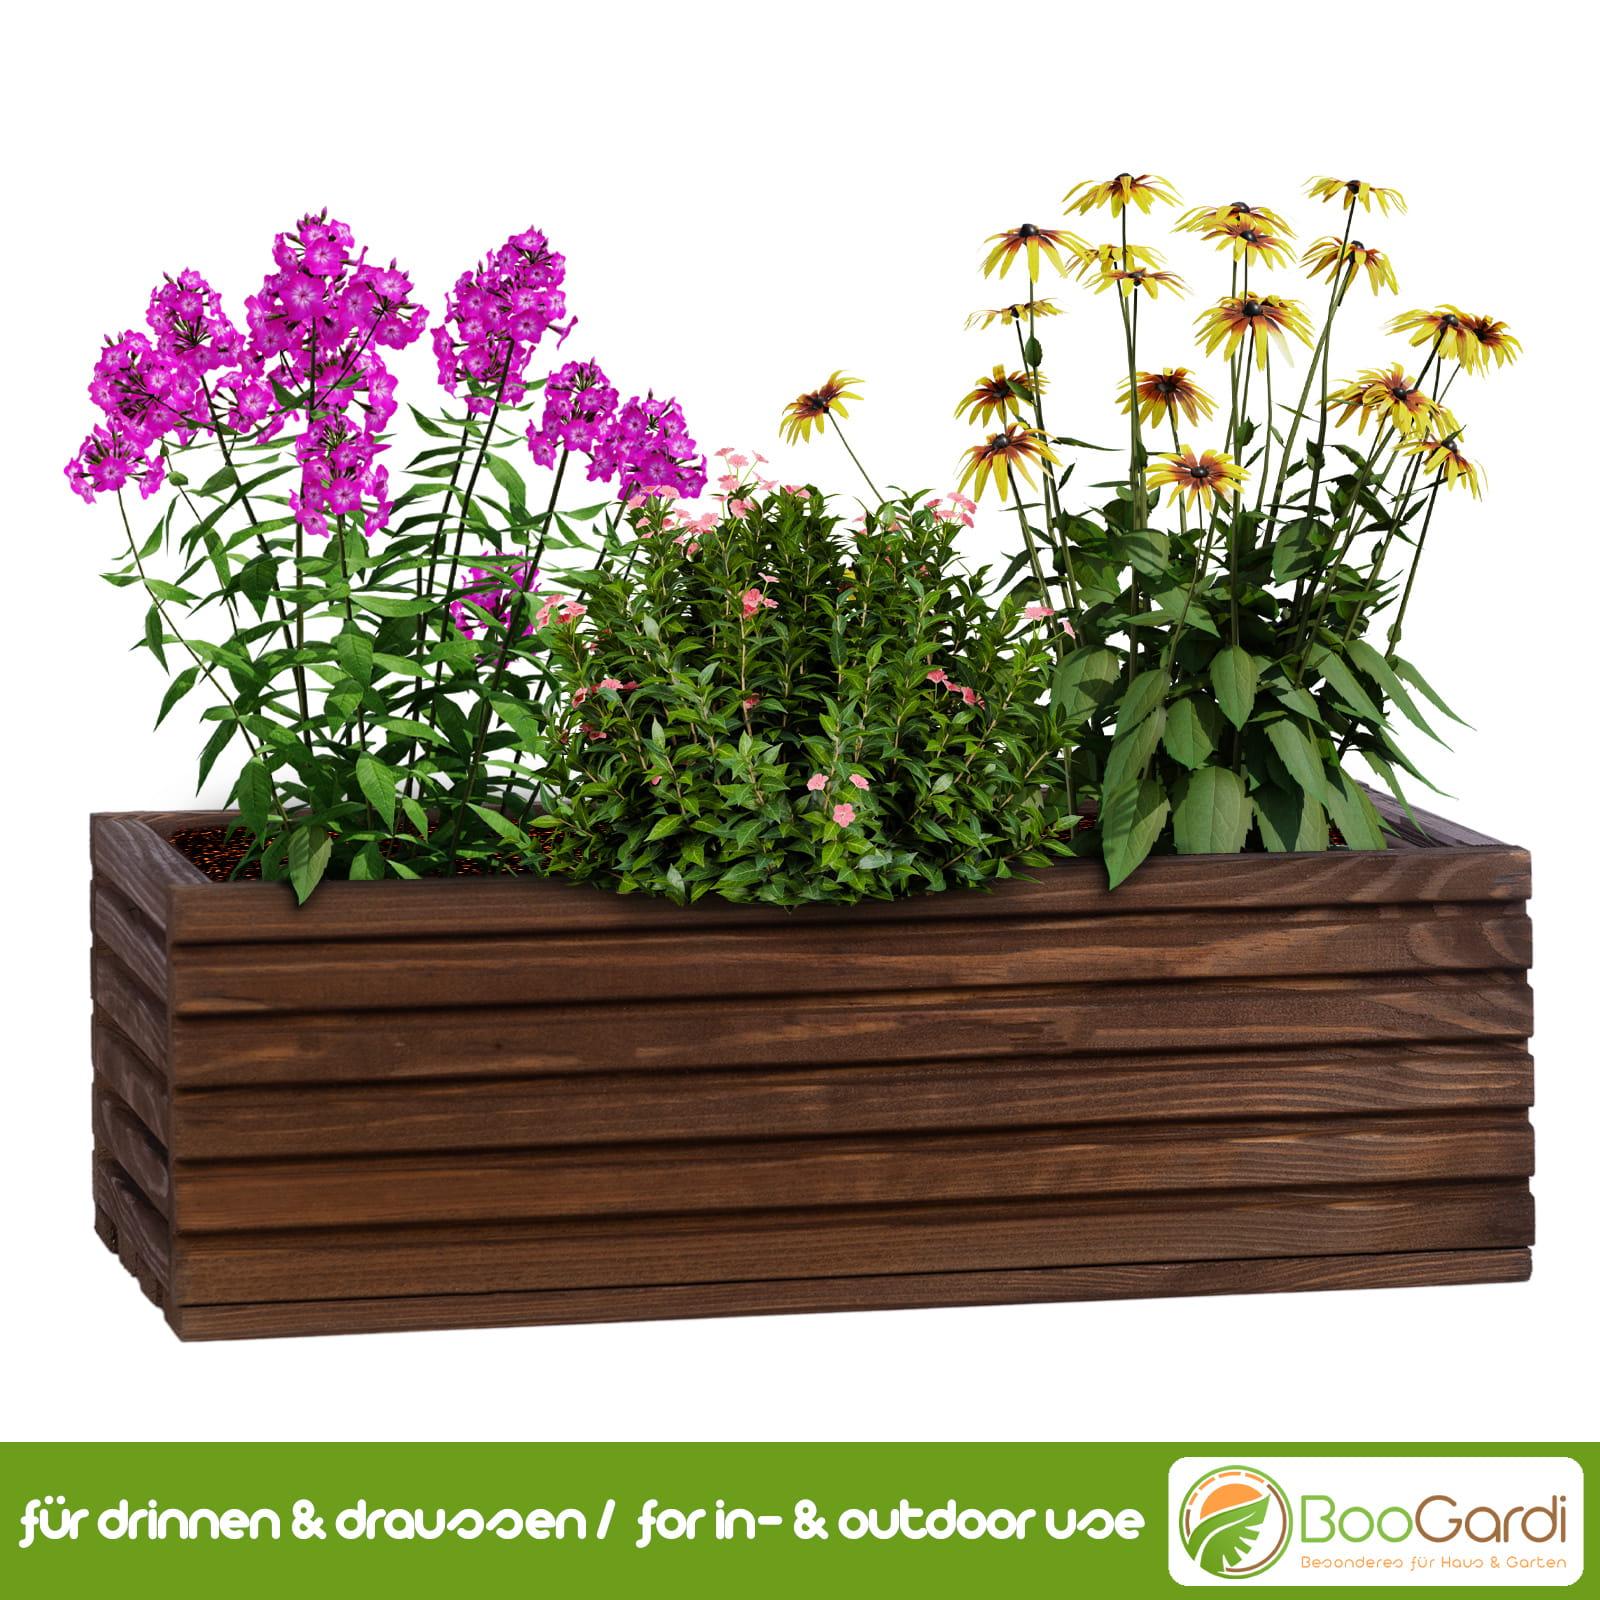 Blumenkasten mit Kunststoffeinsatz BooGardi & Garten Haus | 